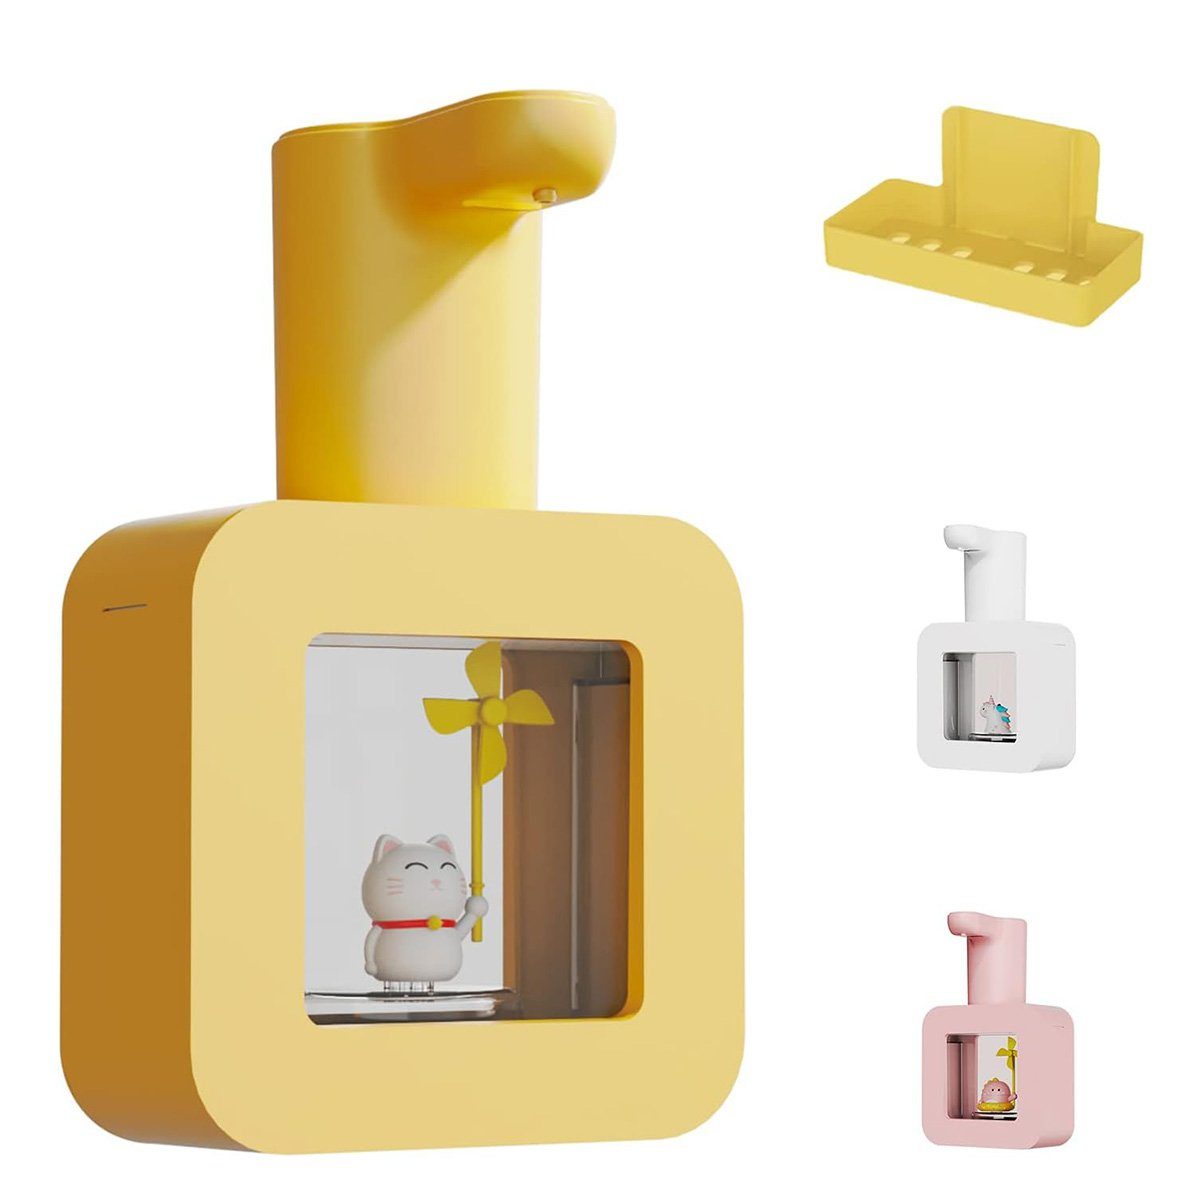 götäzer Seifenspender Automatischer Seifenspender für Kinder im Cartoon-Stil, Wiederaufladbarer, wandmontierter 14-Unzen-Seifenspender Gelb